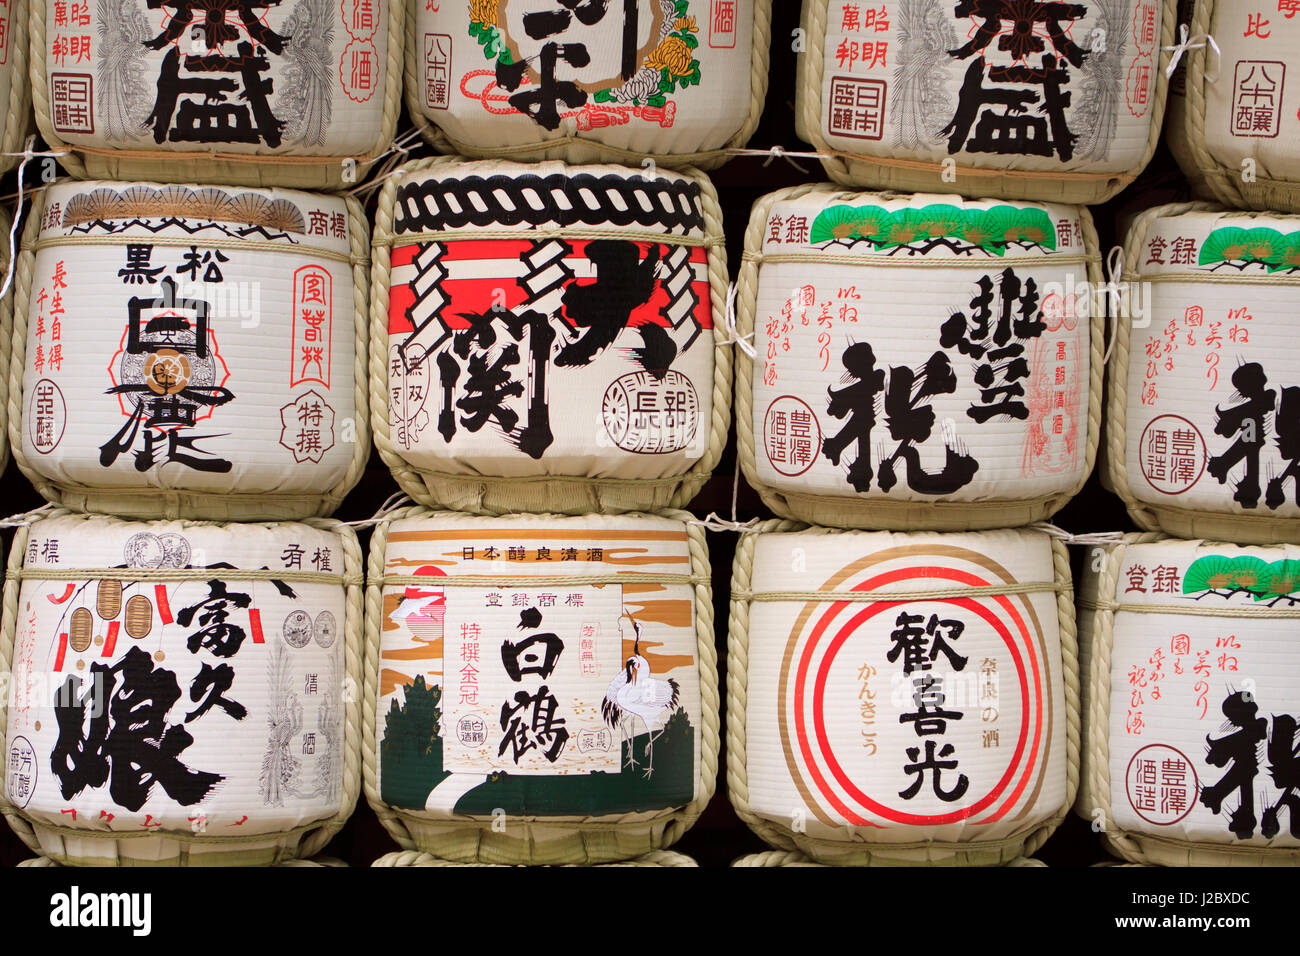 Decorazione di barili di sake si trovano spesso sul display in giapponese santuari di rappresentare il collegamento che l'alcol ha di avvicinare persone agli dèi. Foto Stock